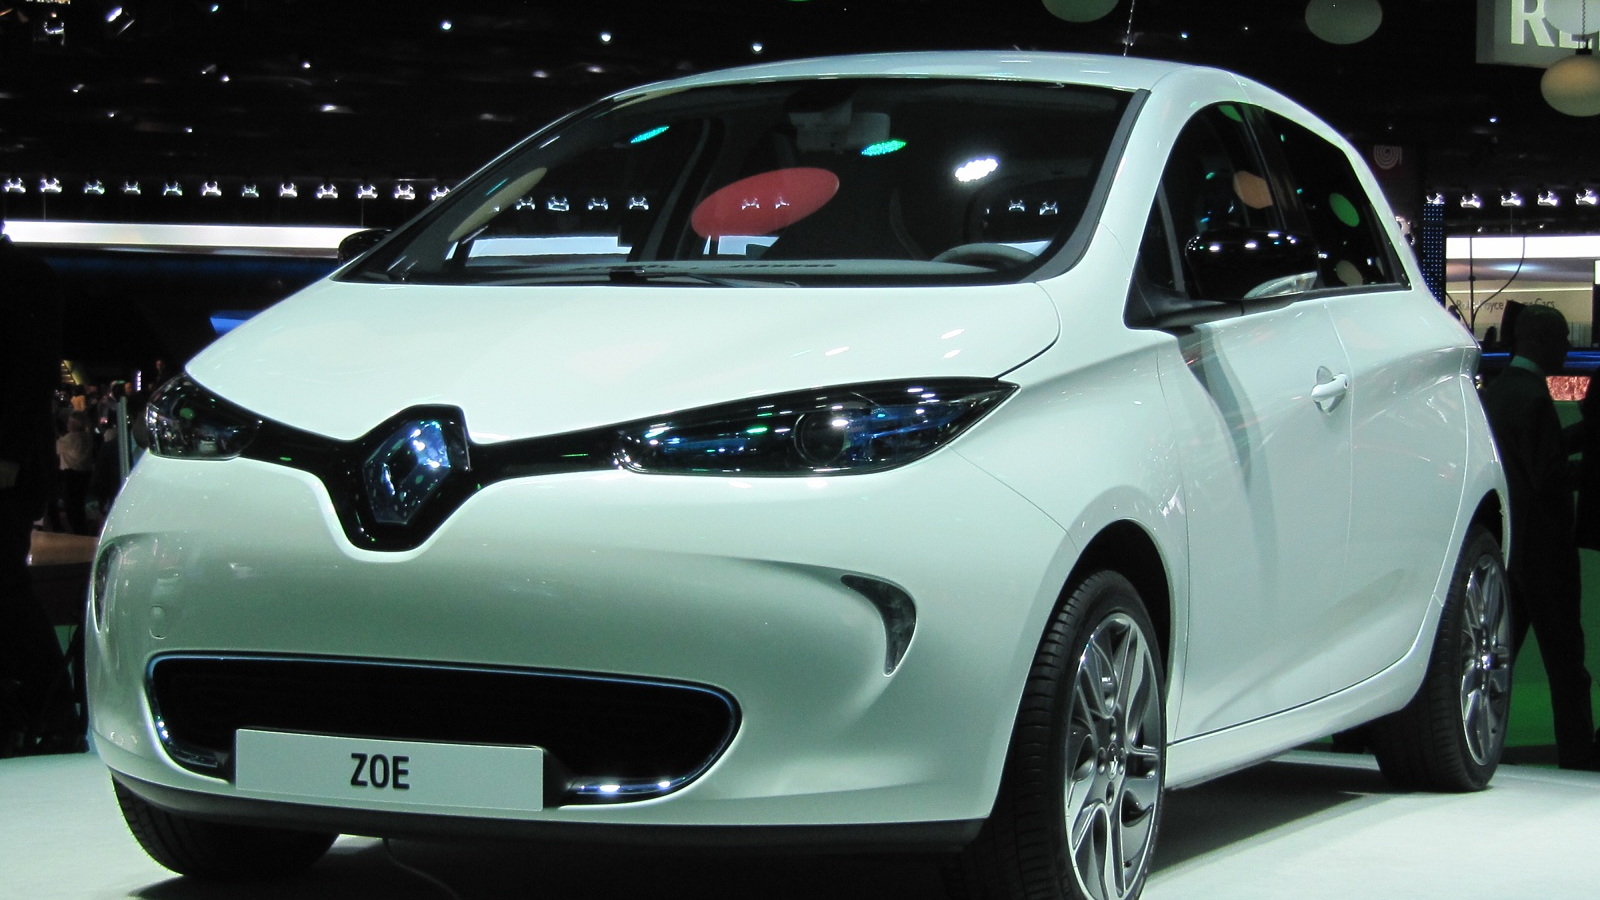 2013 Renault Zoe electric car (European model) at 2012 Paris Auto Show